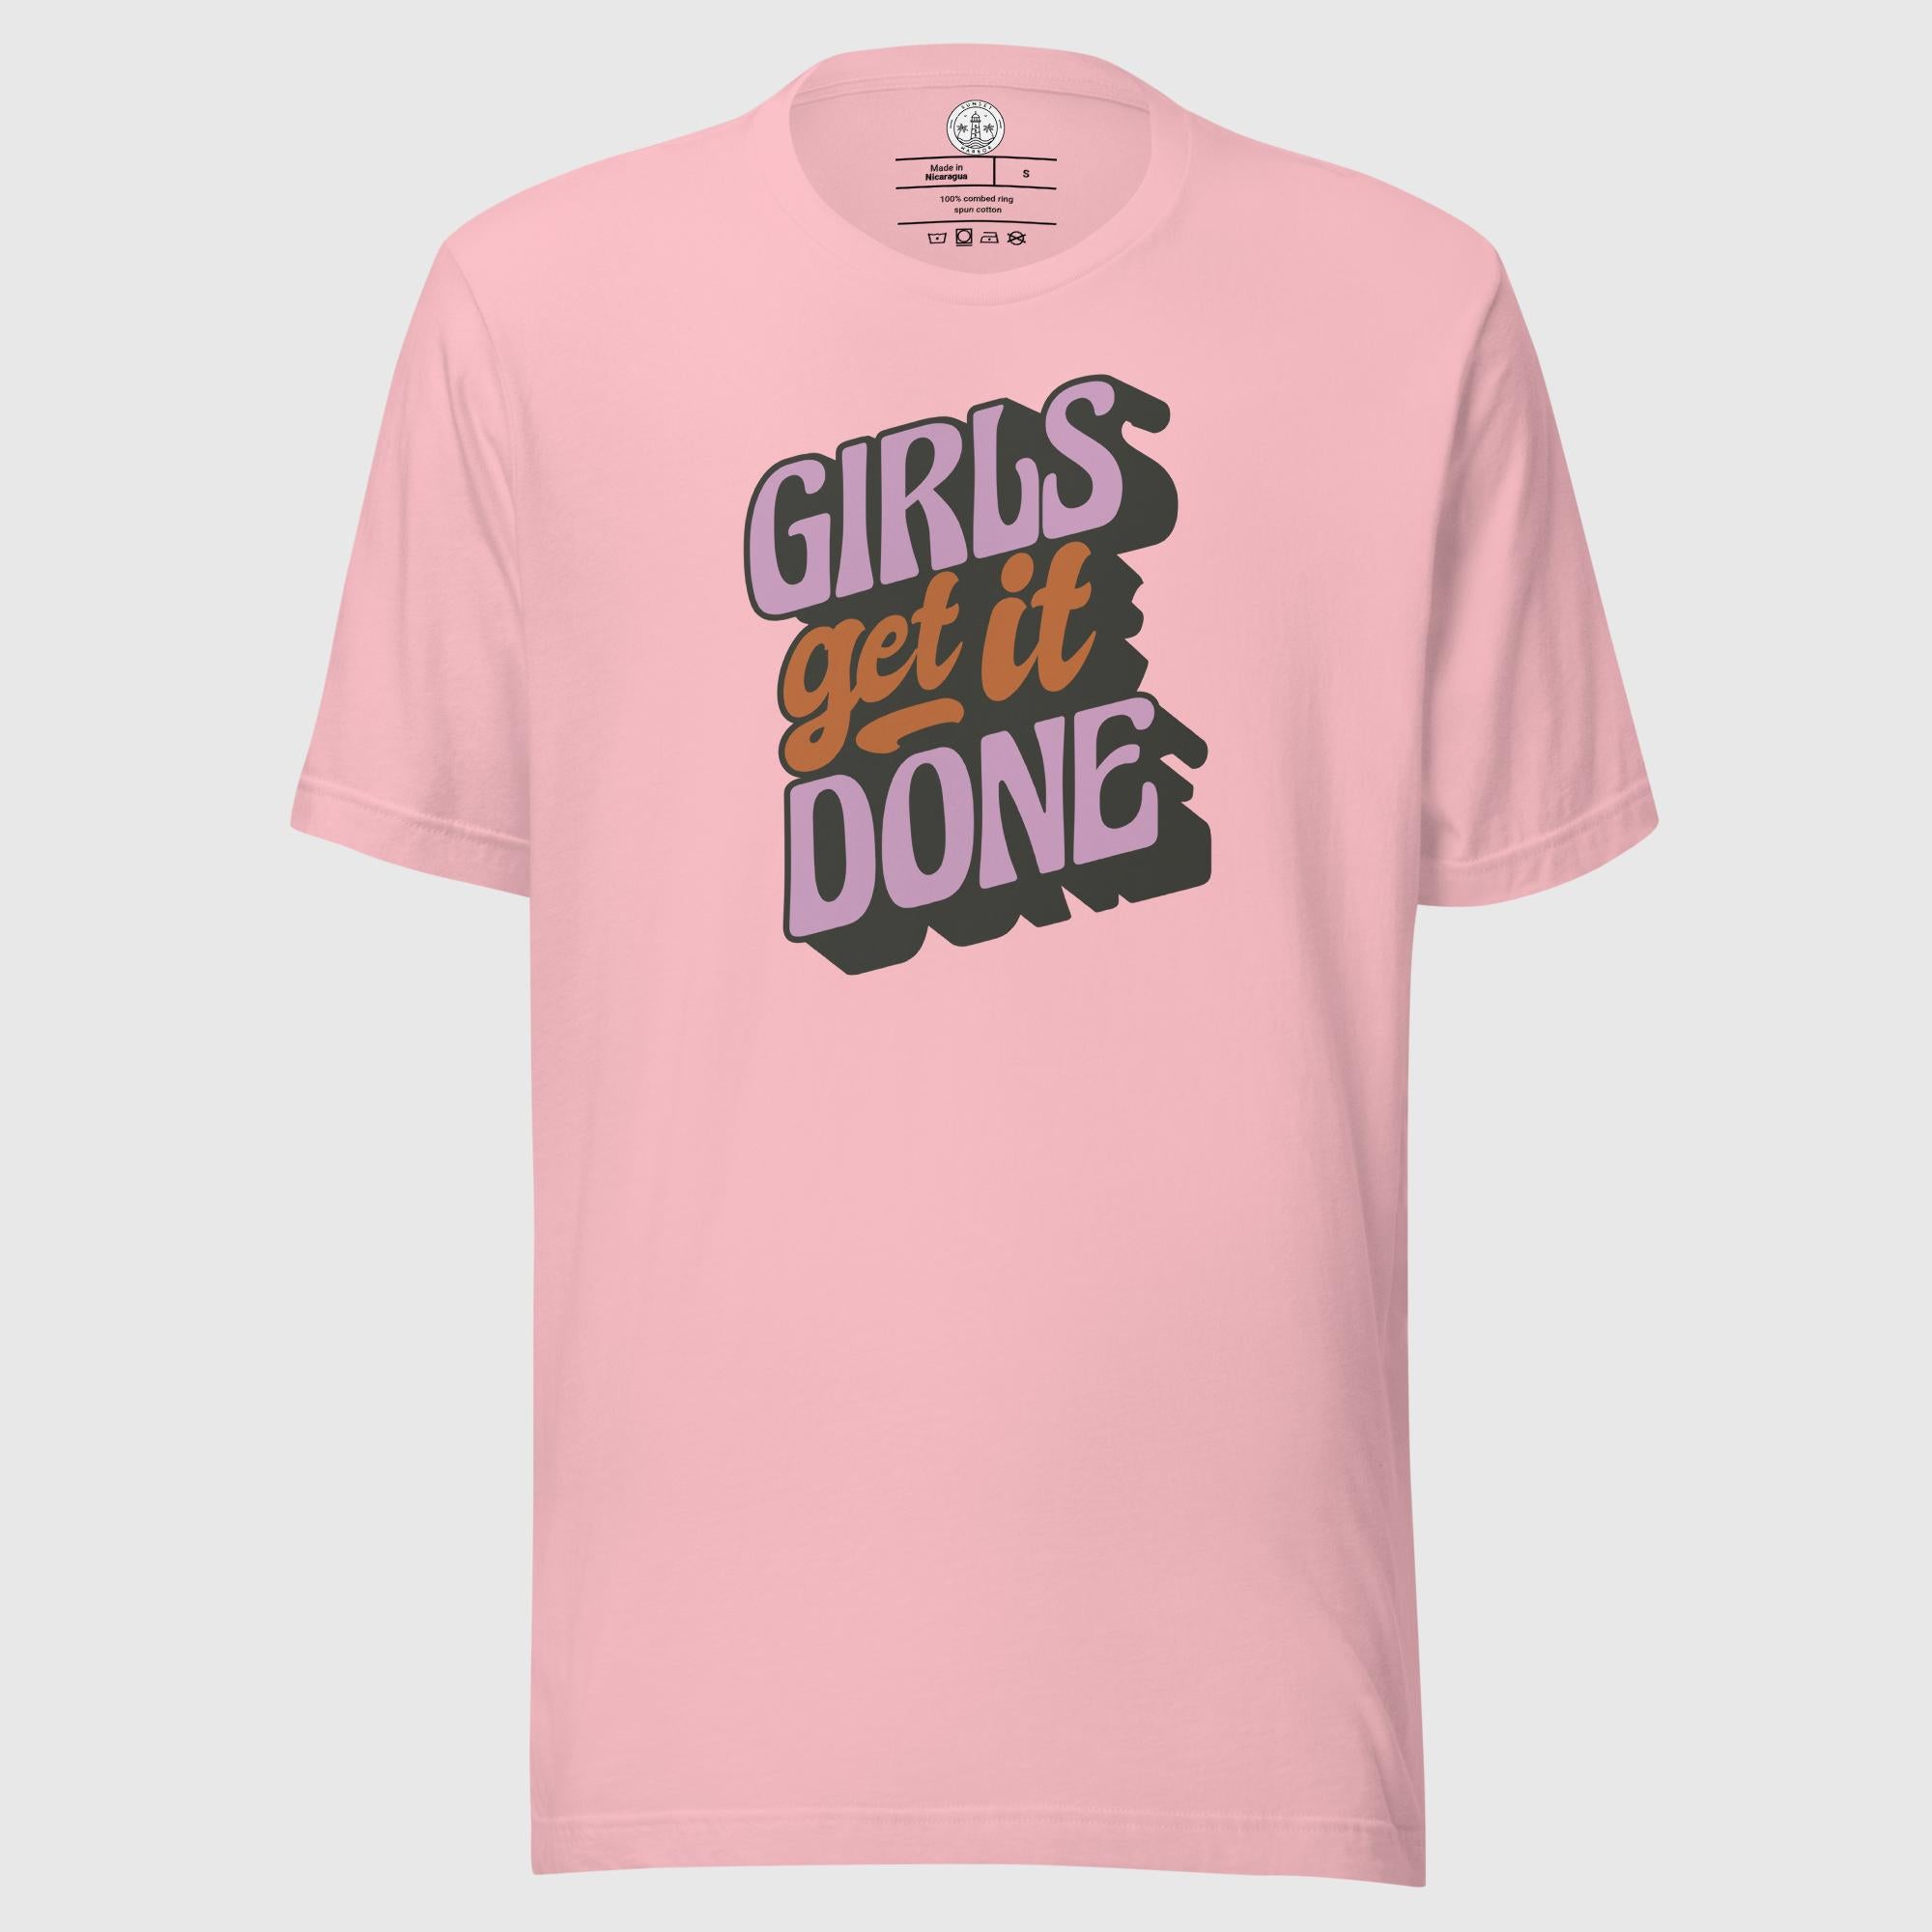 Women's t-shirt - Girls get it done